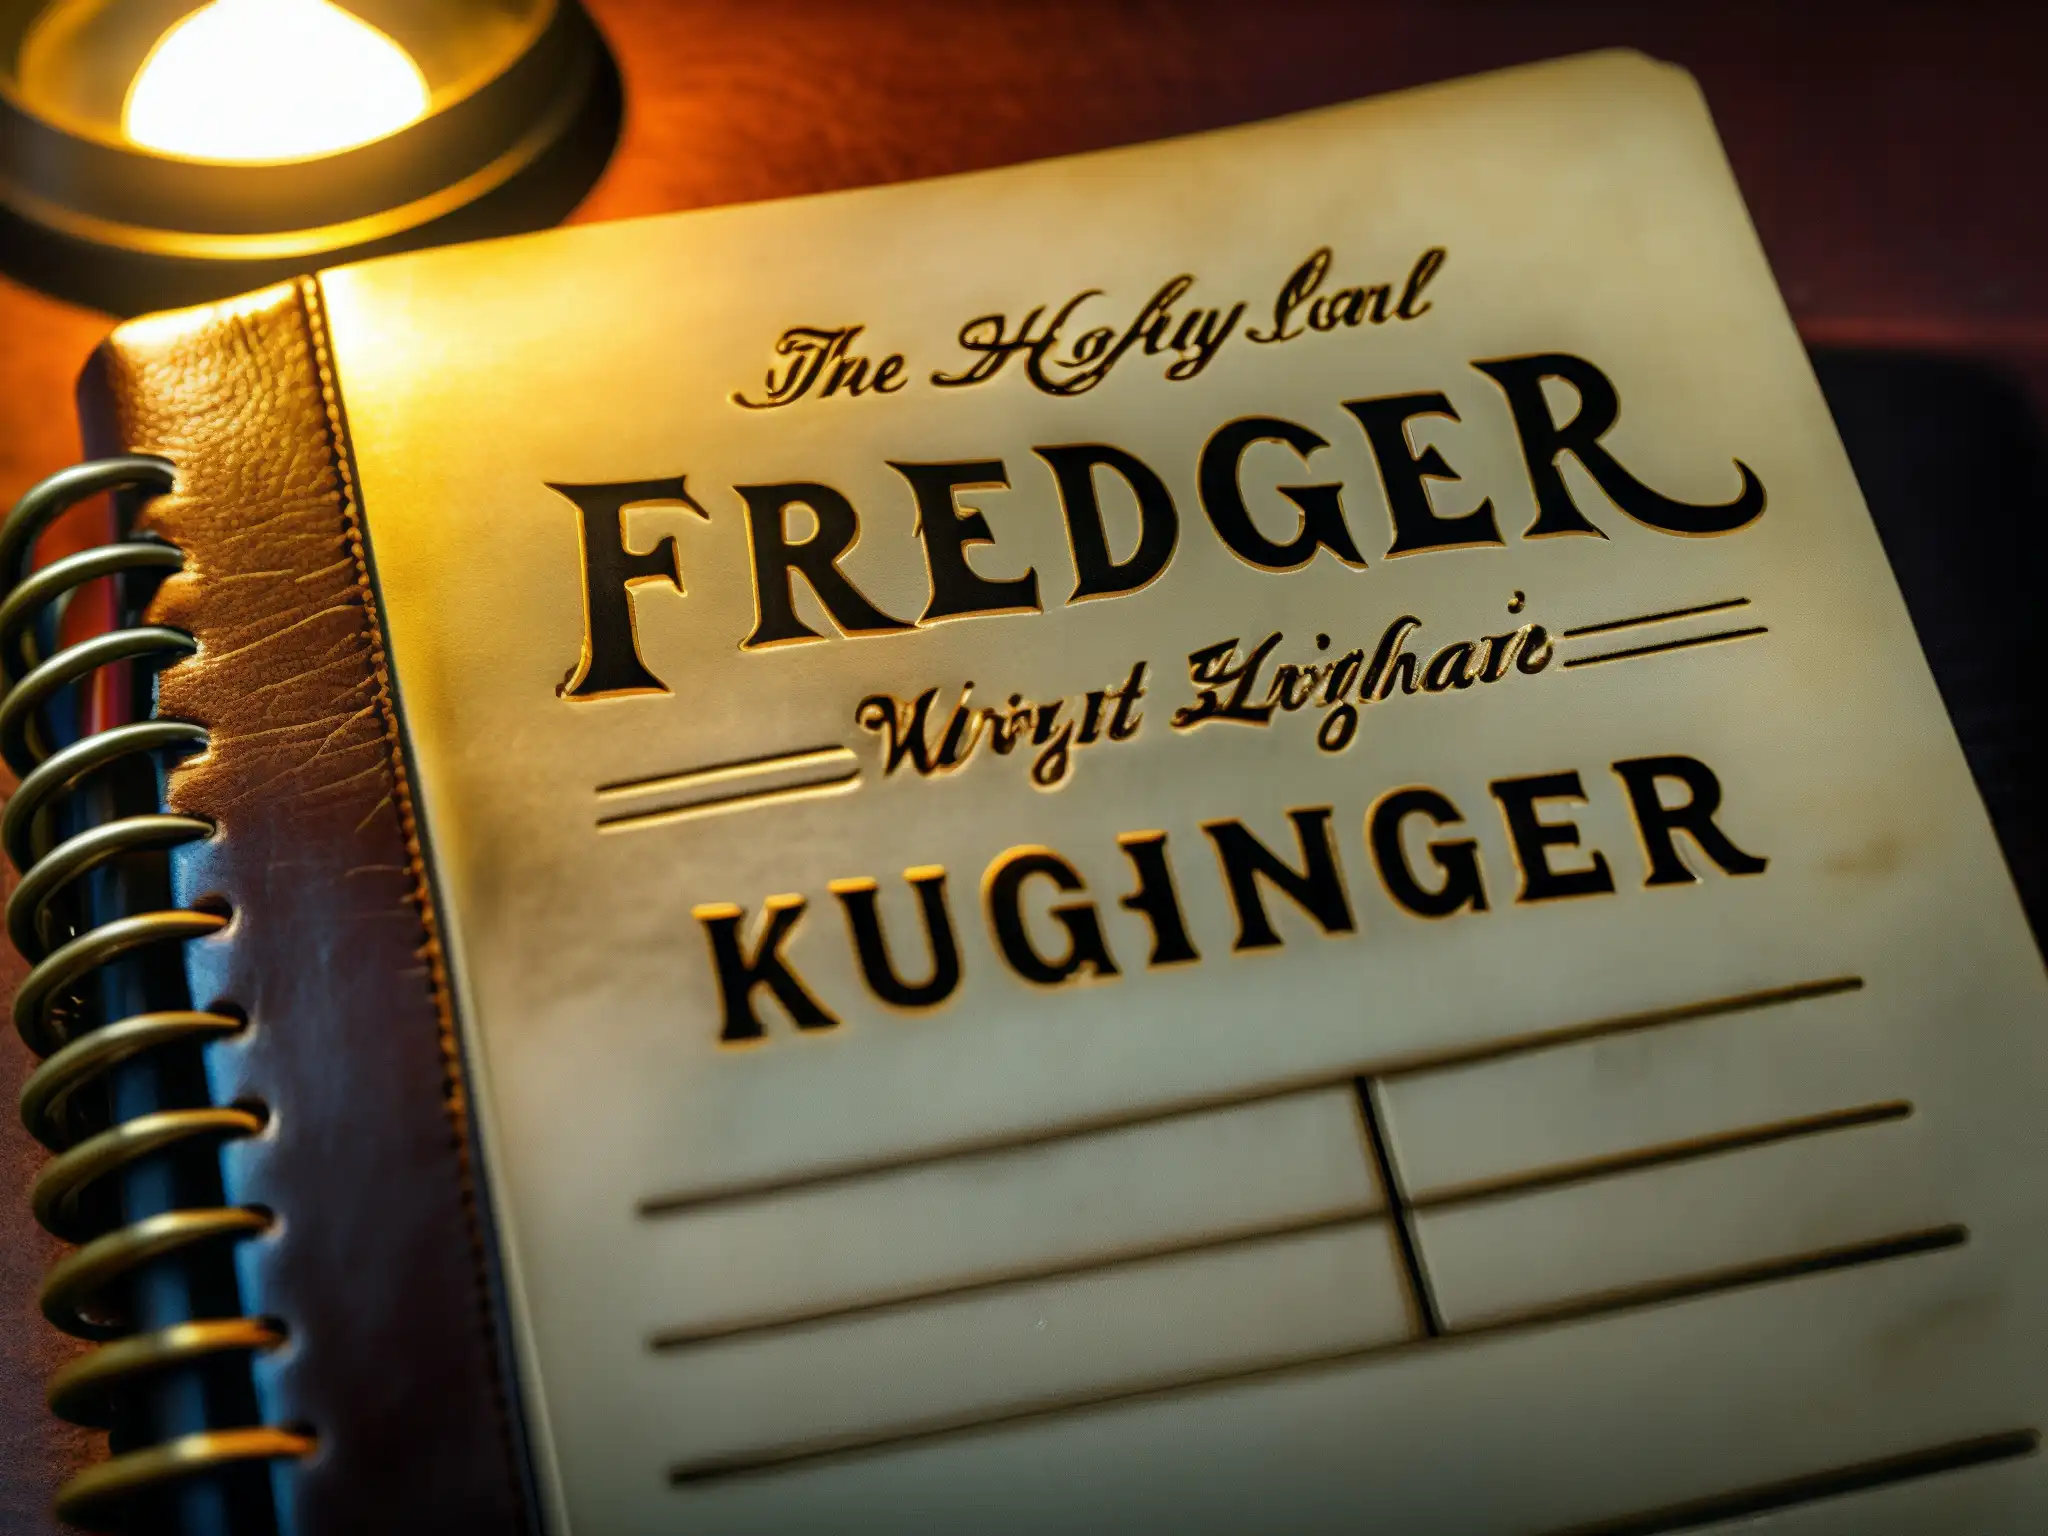 Un diario desgastado con el nombre 'Freddy Krueger' en letras doradas, lleno de notas y dibujos inquietantes